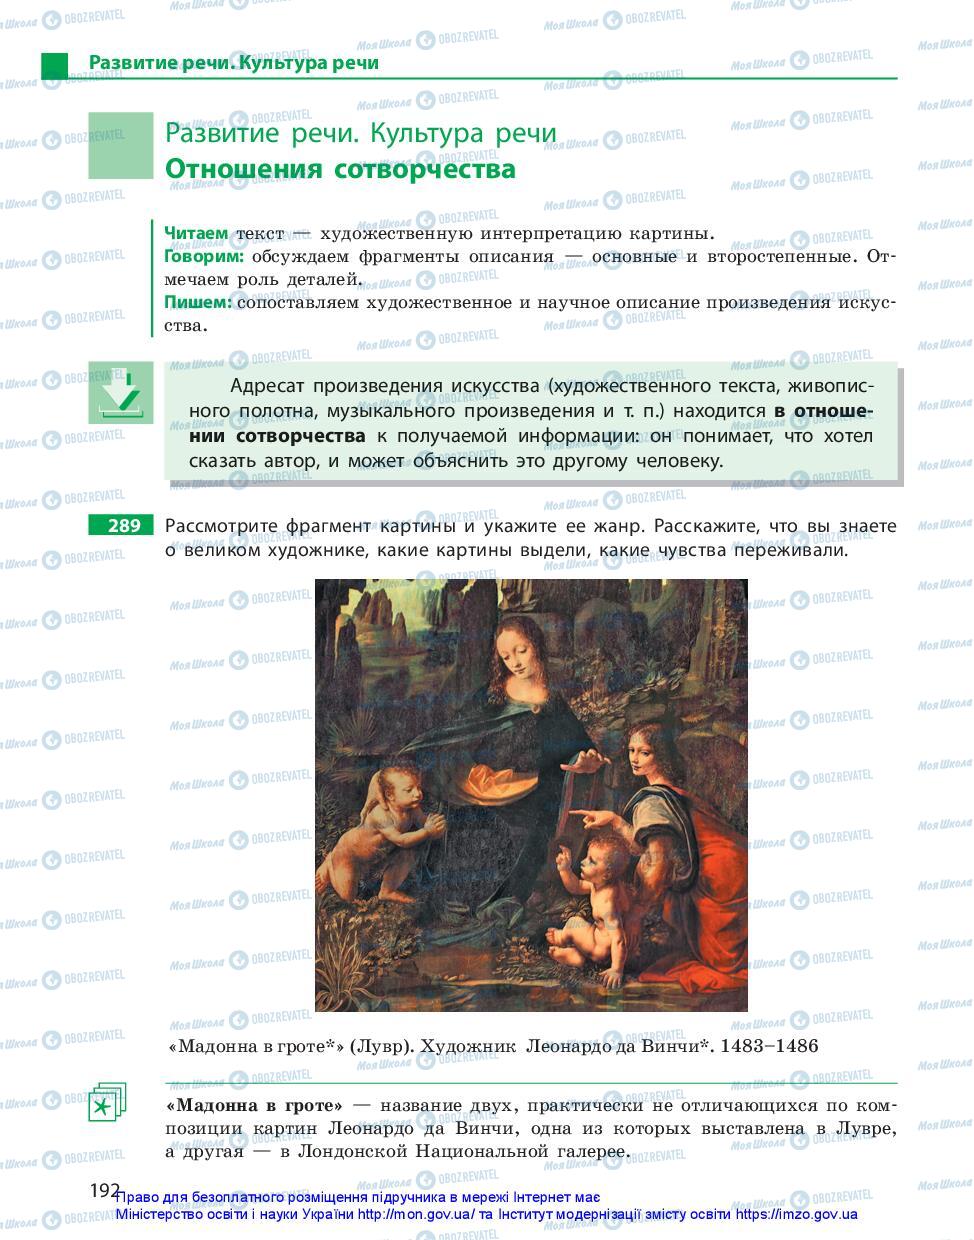 Підручники Російська мова 10 клас сторінка 192